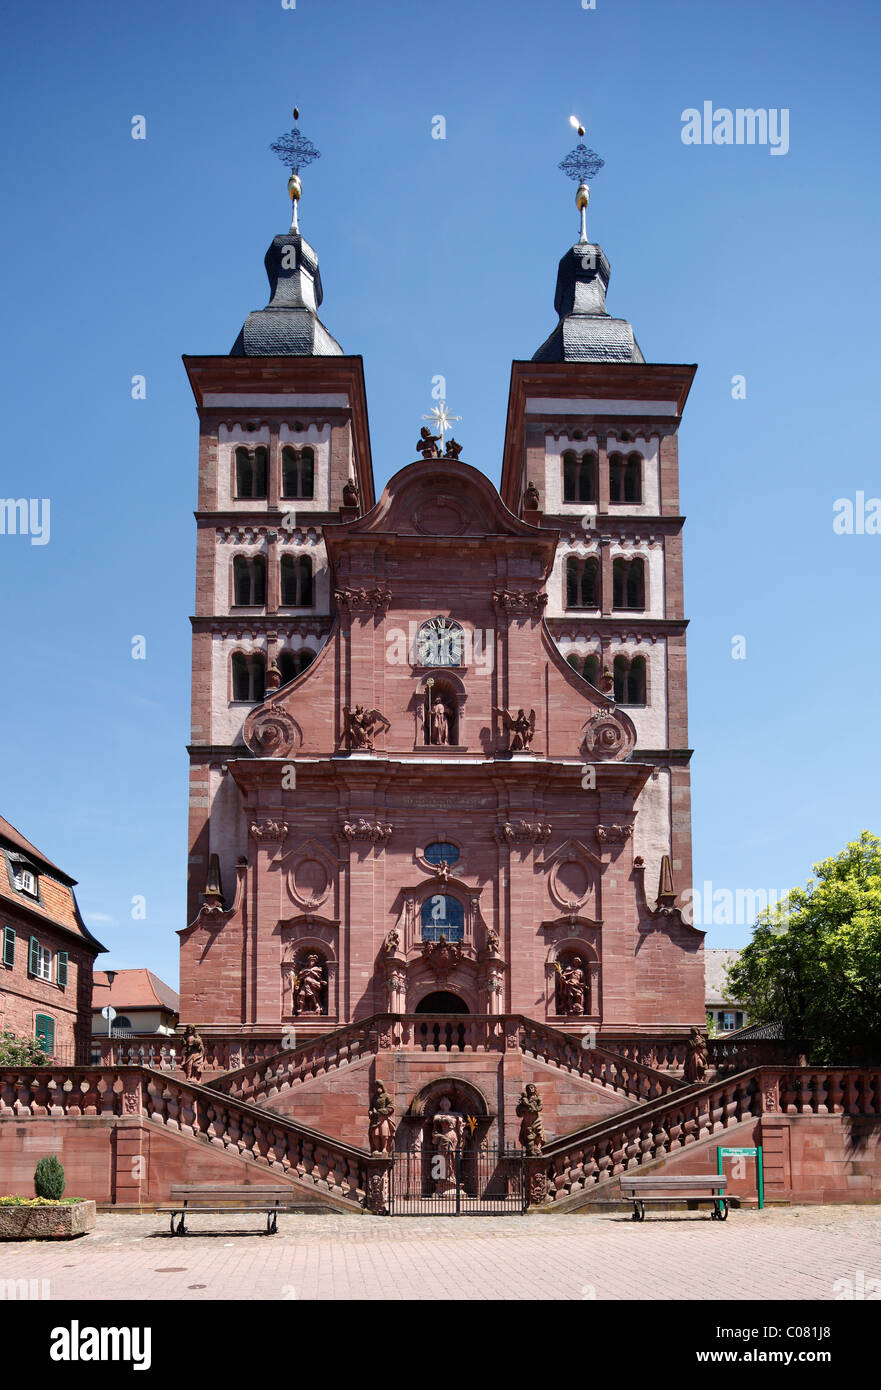 Façade ouest de l'église abbatiale, Abteikirche Amorbach, Mainfranken, Lower Franconia, Franconia, Bavaria, Germany, Europe Banque D'Images